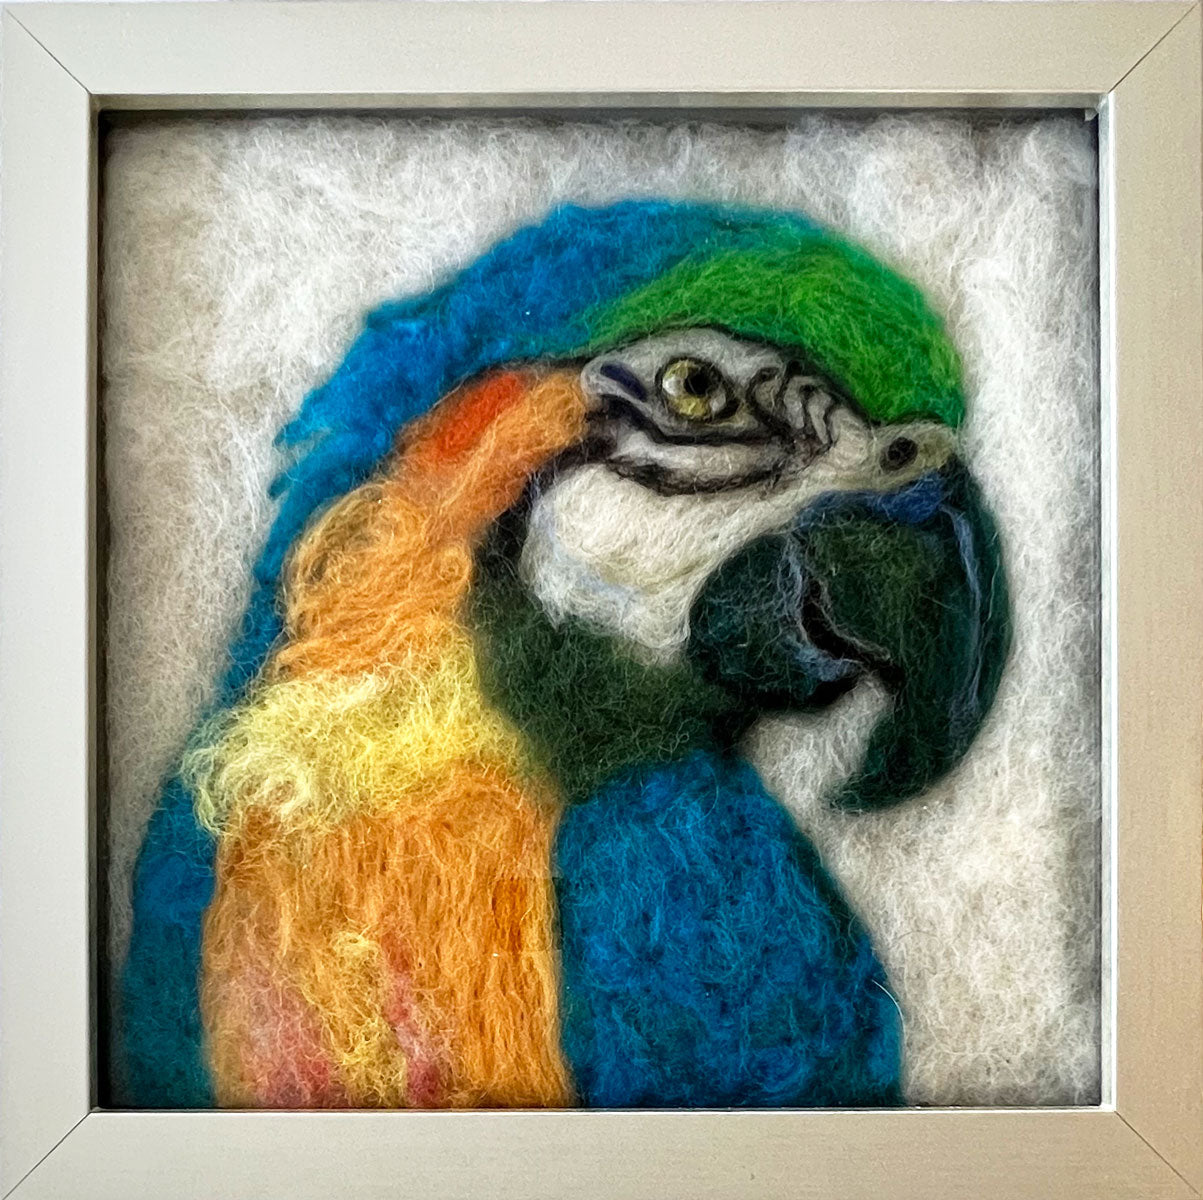 99. Macaw